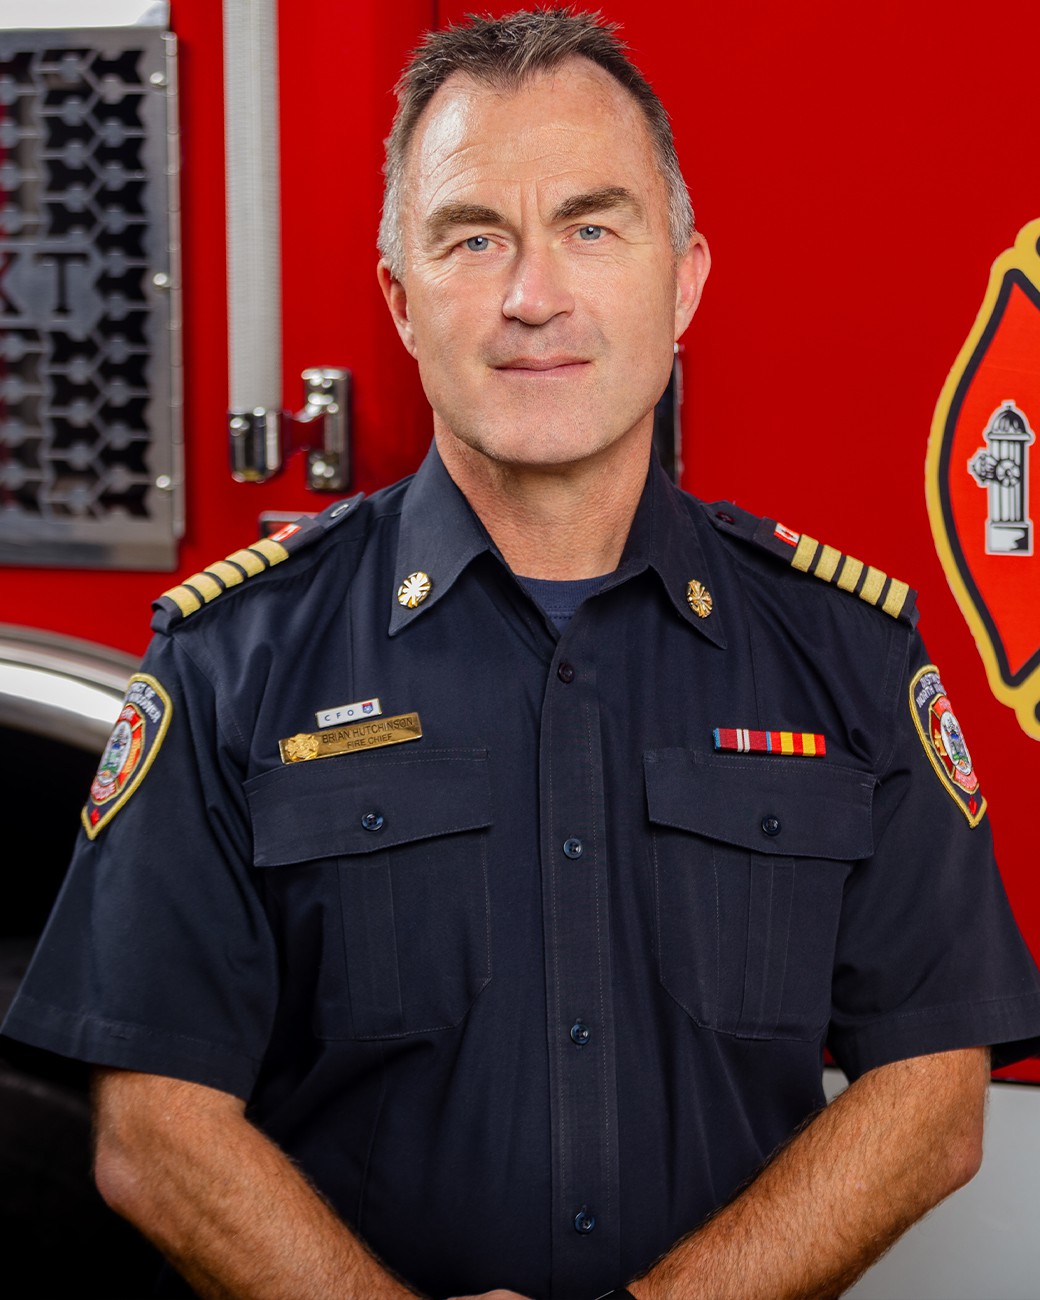 Fire Chief Brian Hutchinson